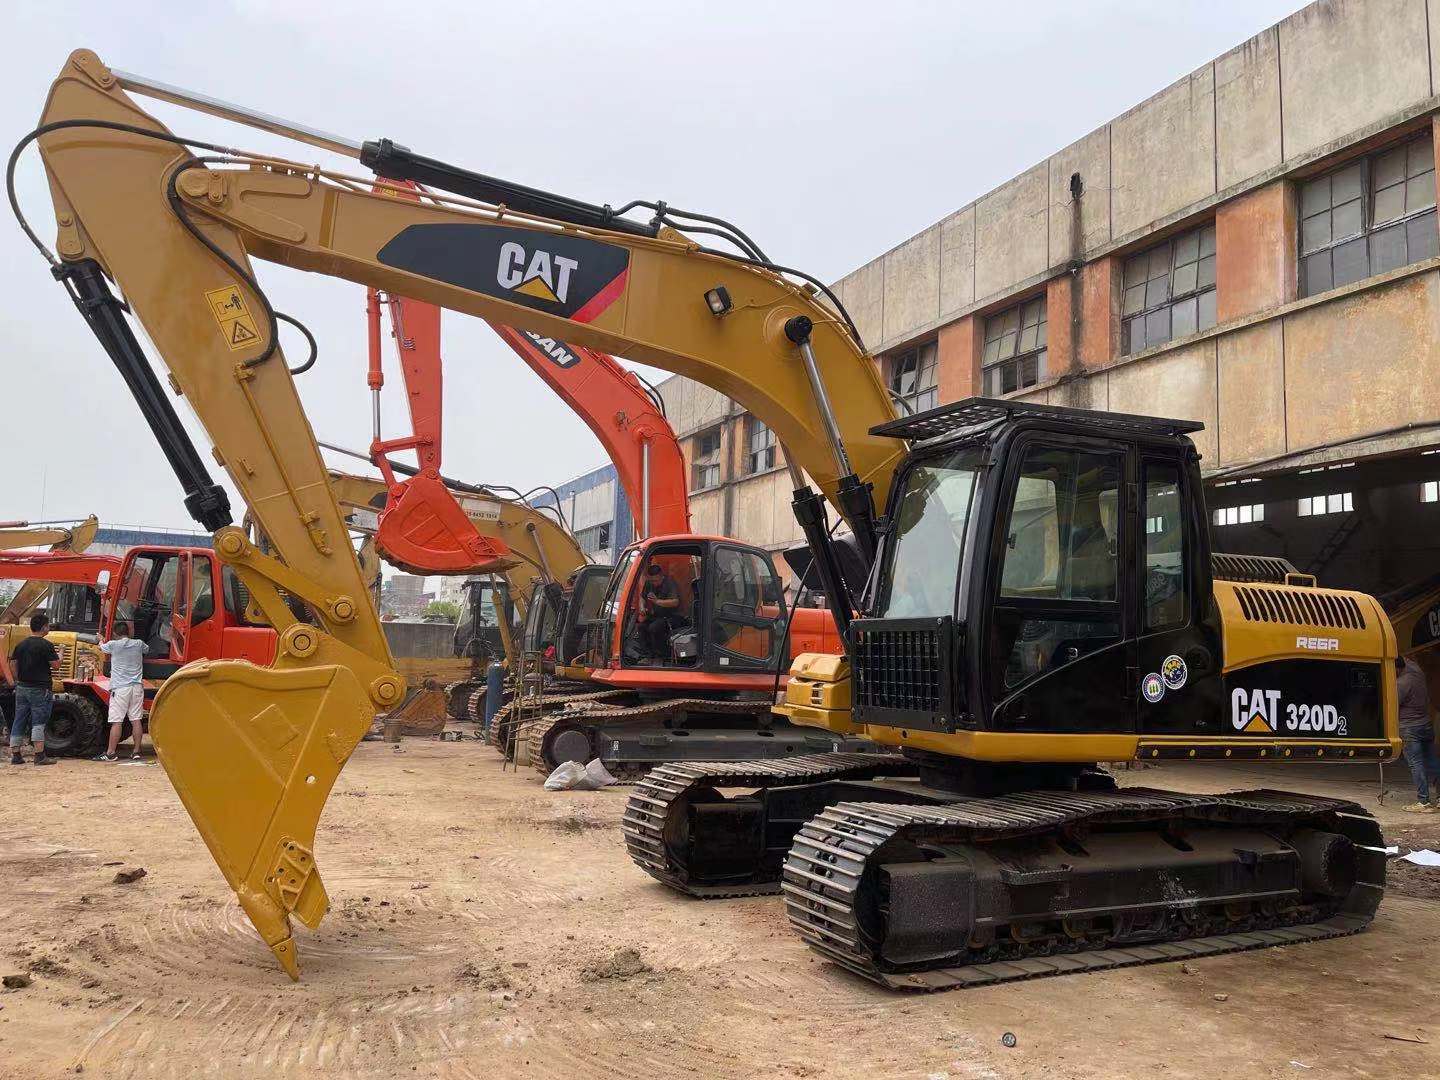 Used Excavator Caterpillar 320d Excavator Cat 320d